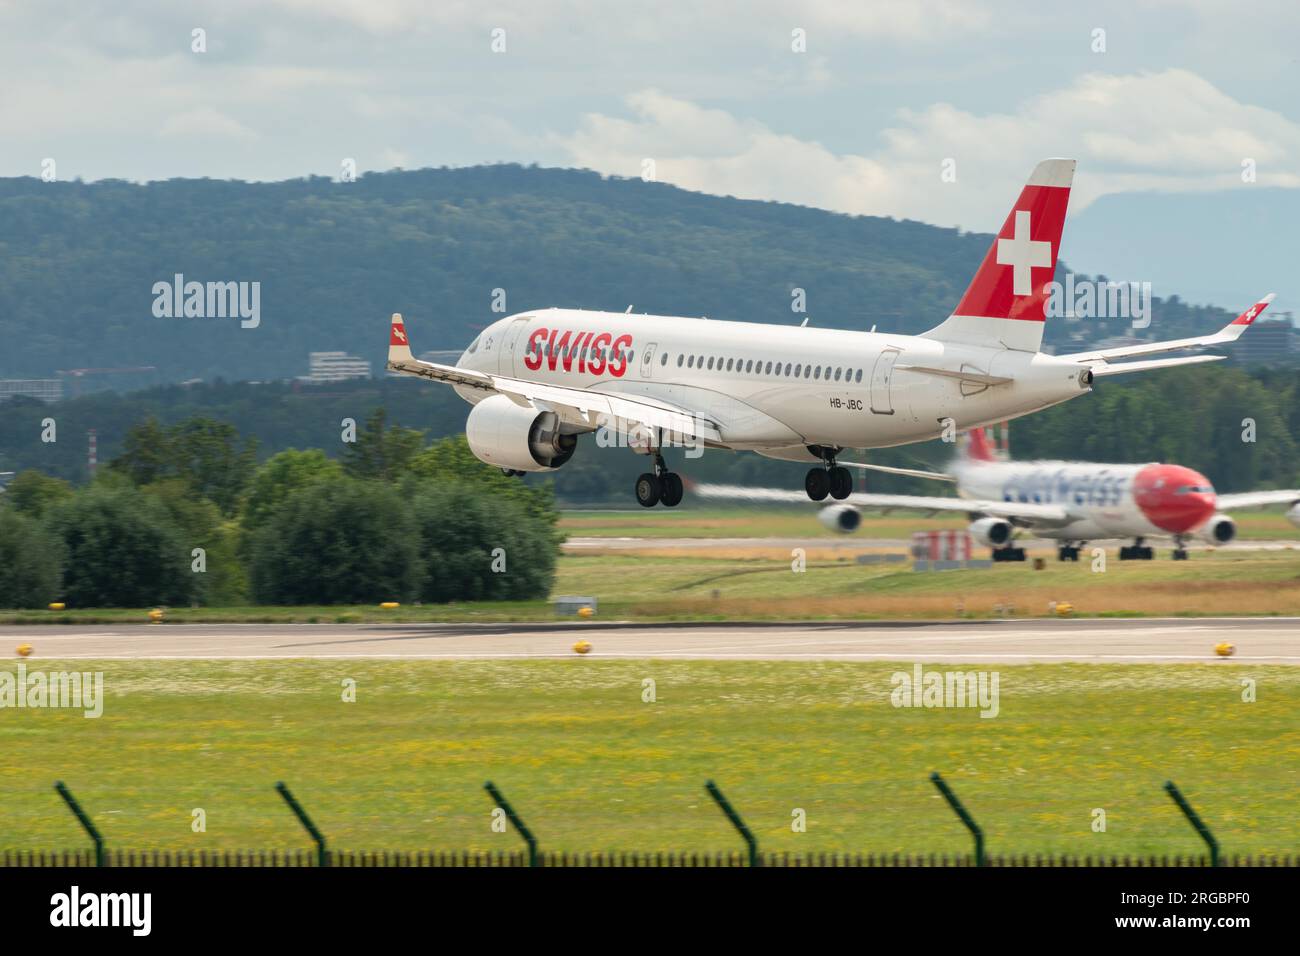 Zurigo, Svizzera, 13 luglio 2023 HB-JBC compagnie aeree internazionali svizzere Bombardier CS-100 o Airbus A220 atterrano sulla pista 14 Foto Stock